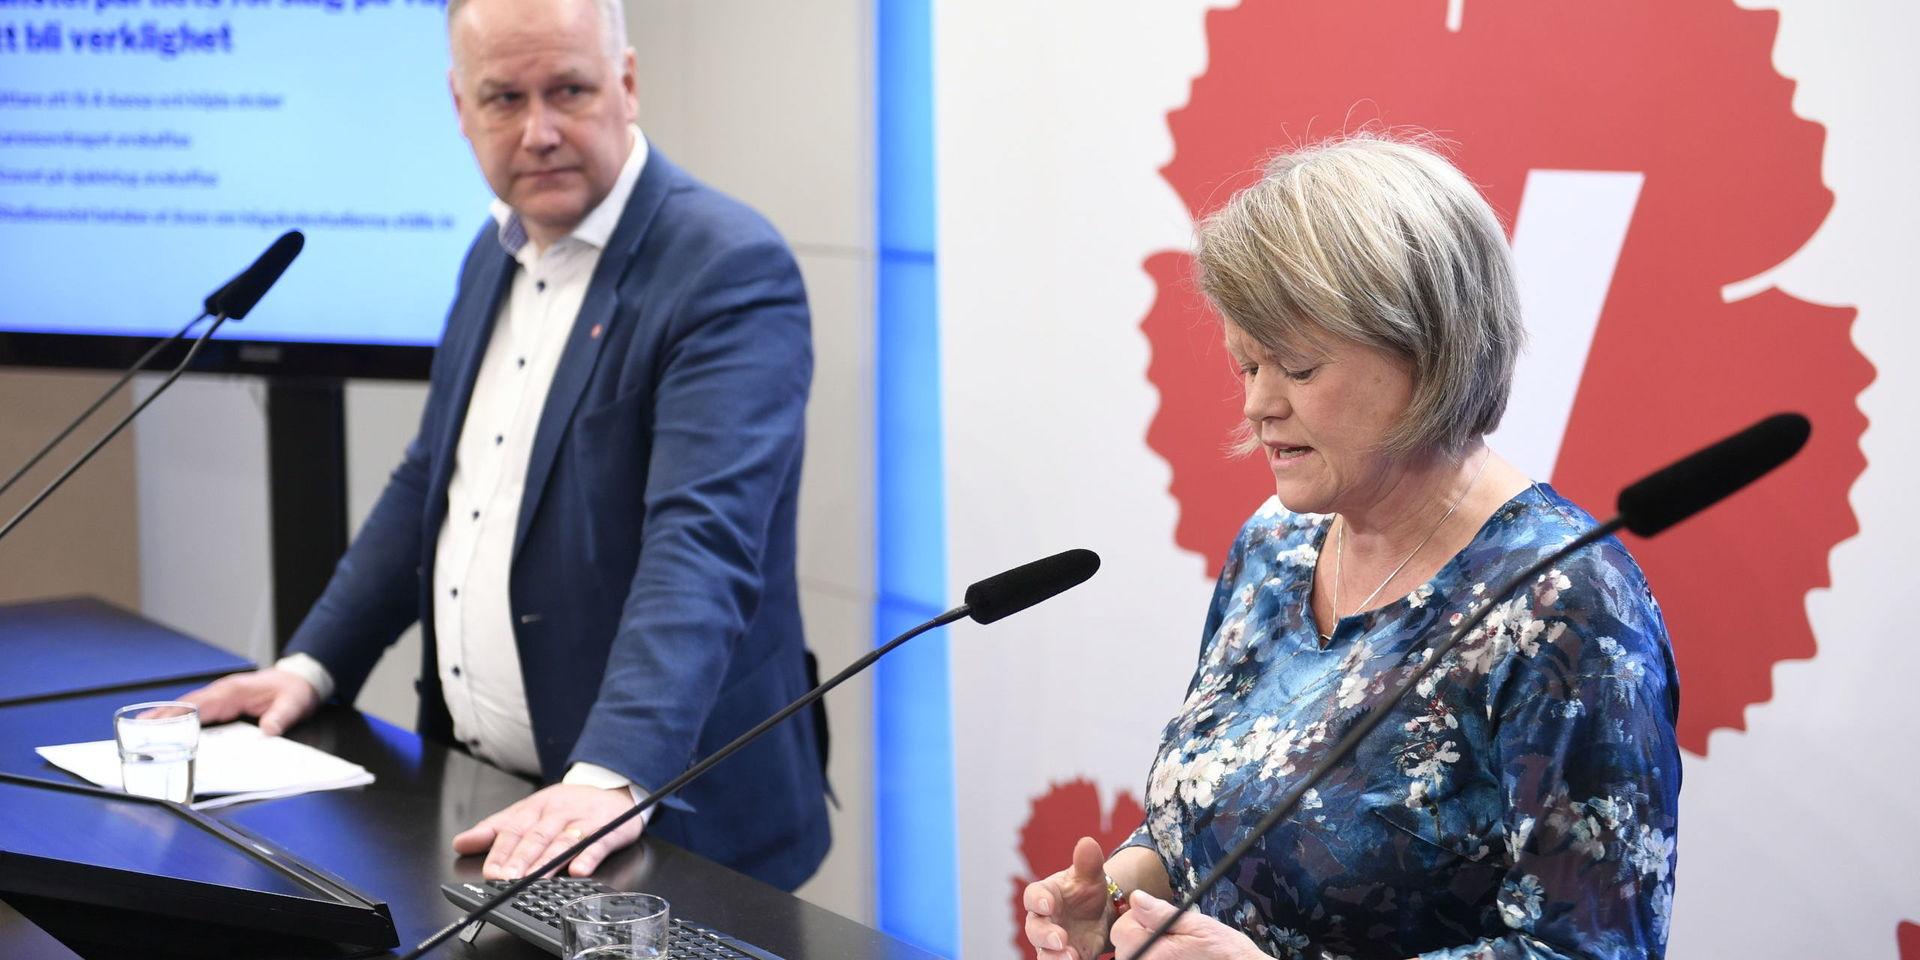 Vänsterpartiet partiledare Jonas Sjöstedt (V) och Ulla Andersson, ekonomiskpolitisk talesperson, på en pressträff.